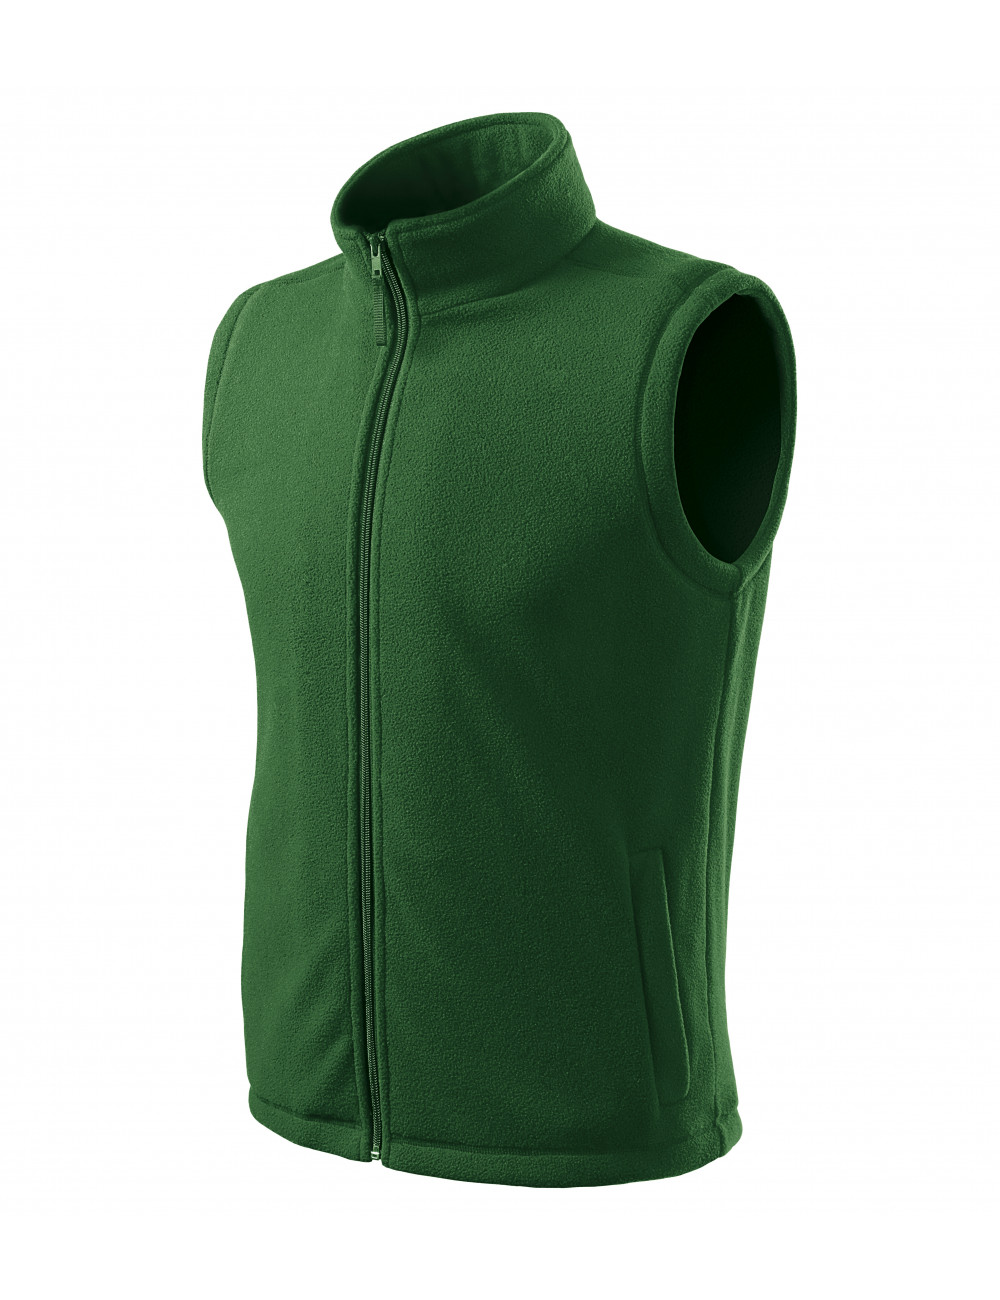 Unisex fleece vest next 518 bottle green Adler Rimeck